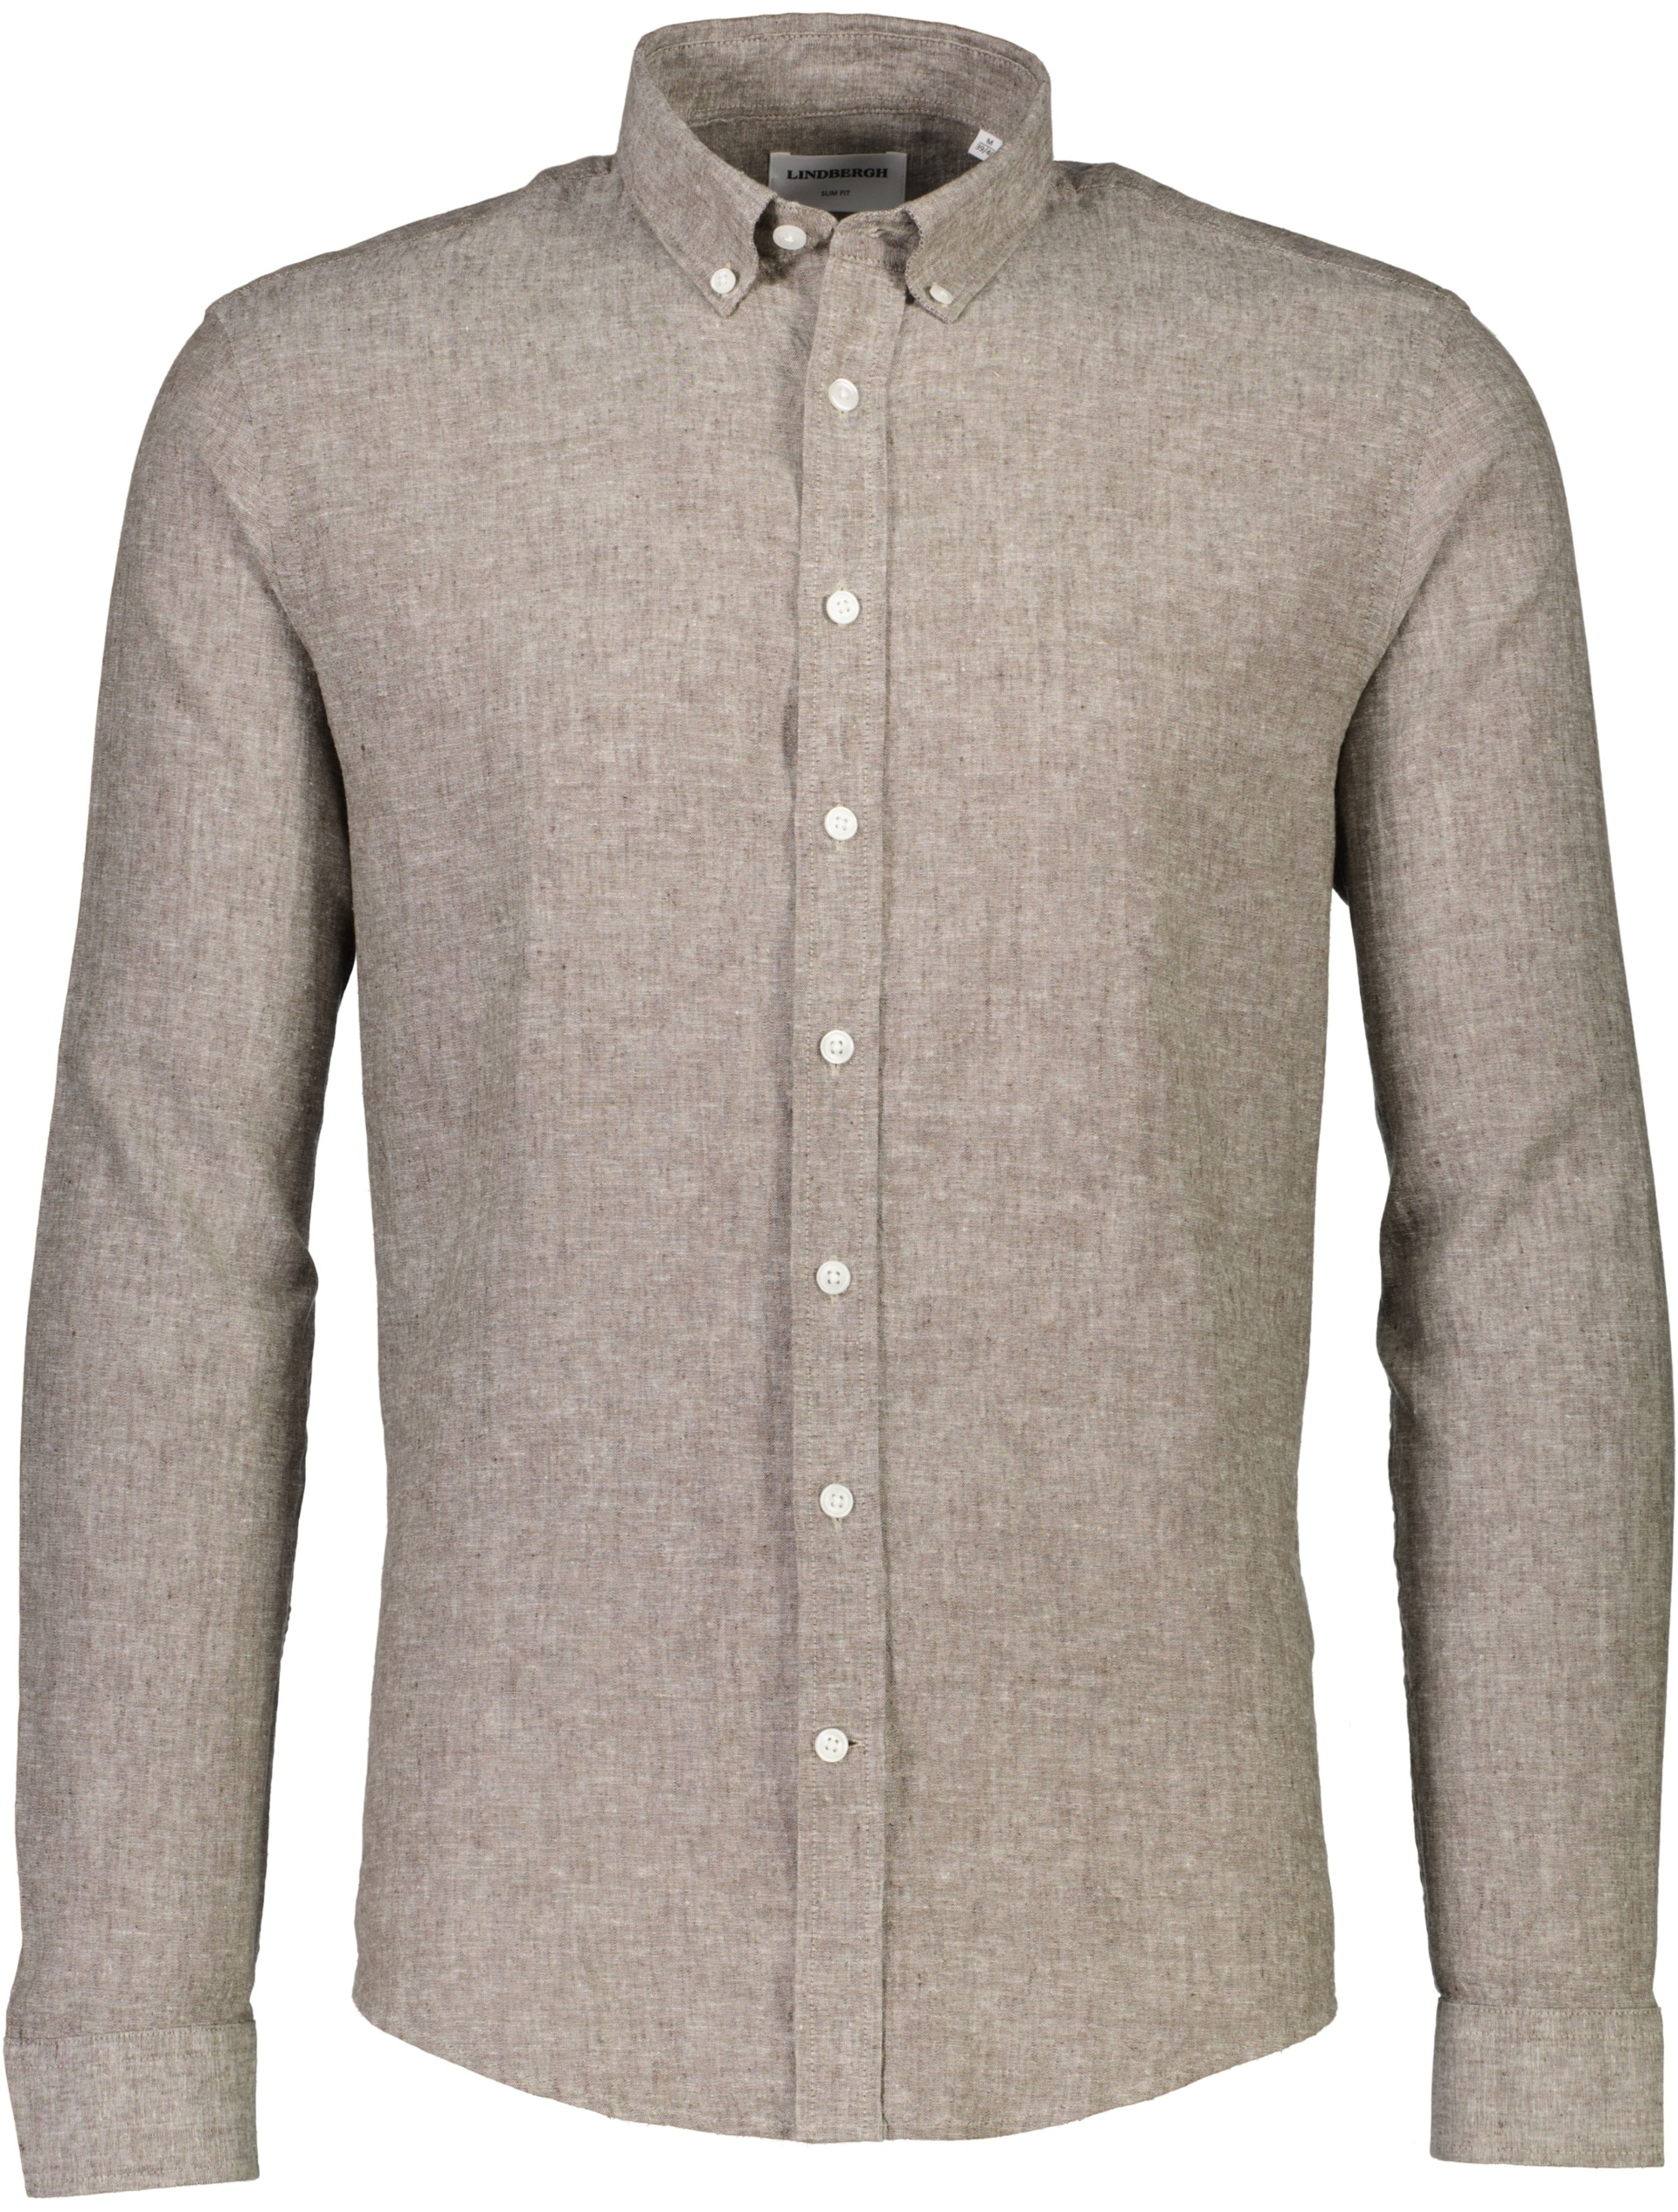 Lindbergh Linen shirt grey / dk stone